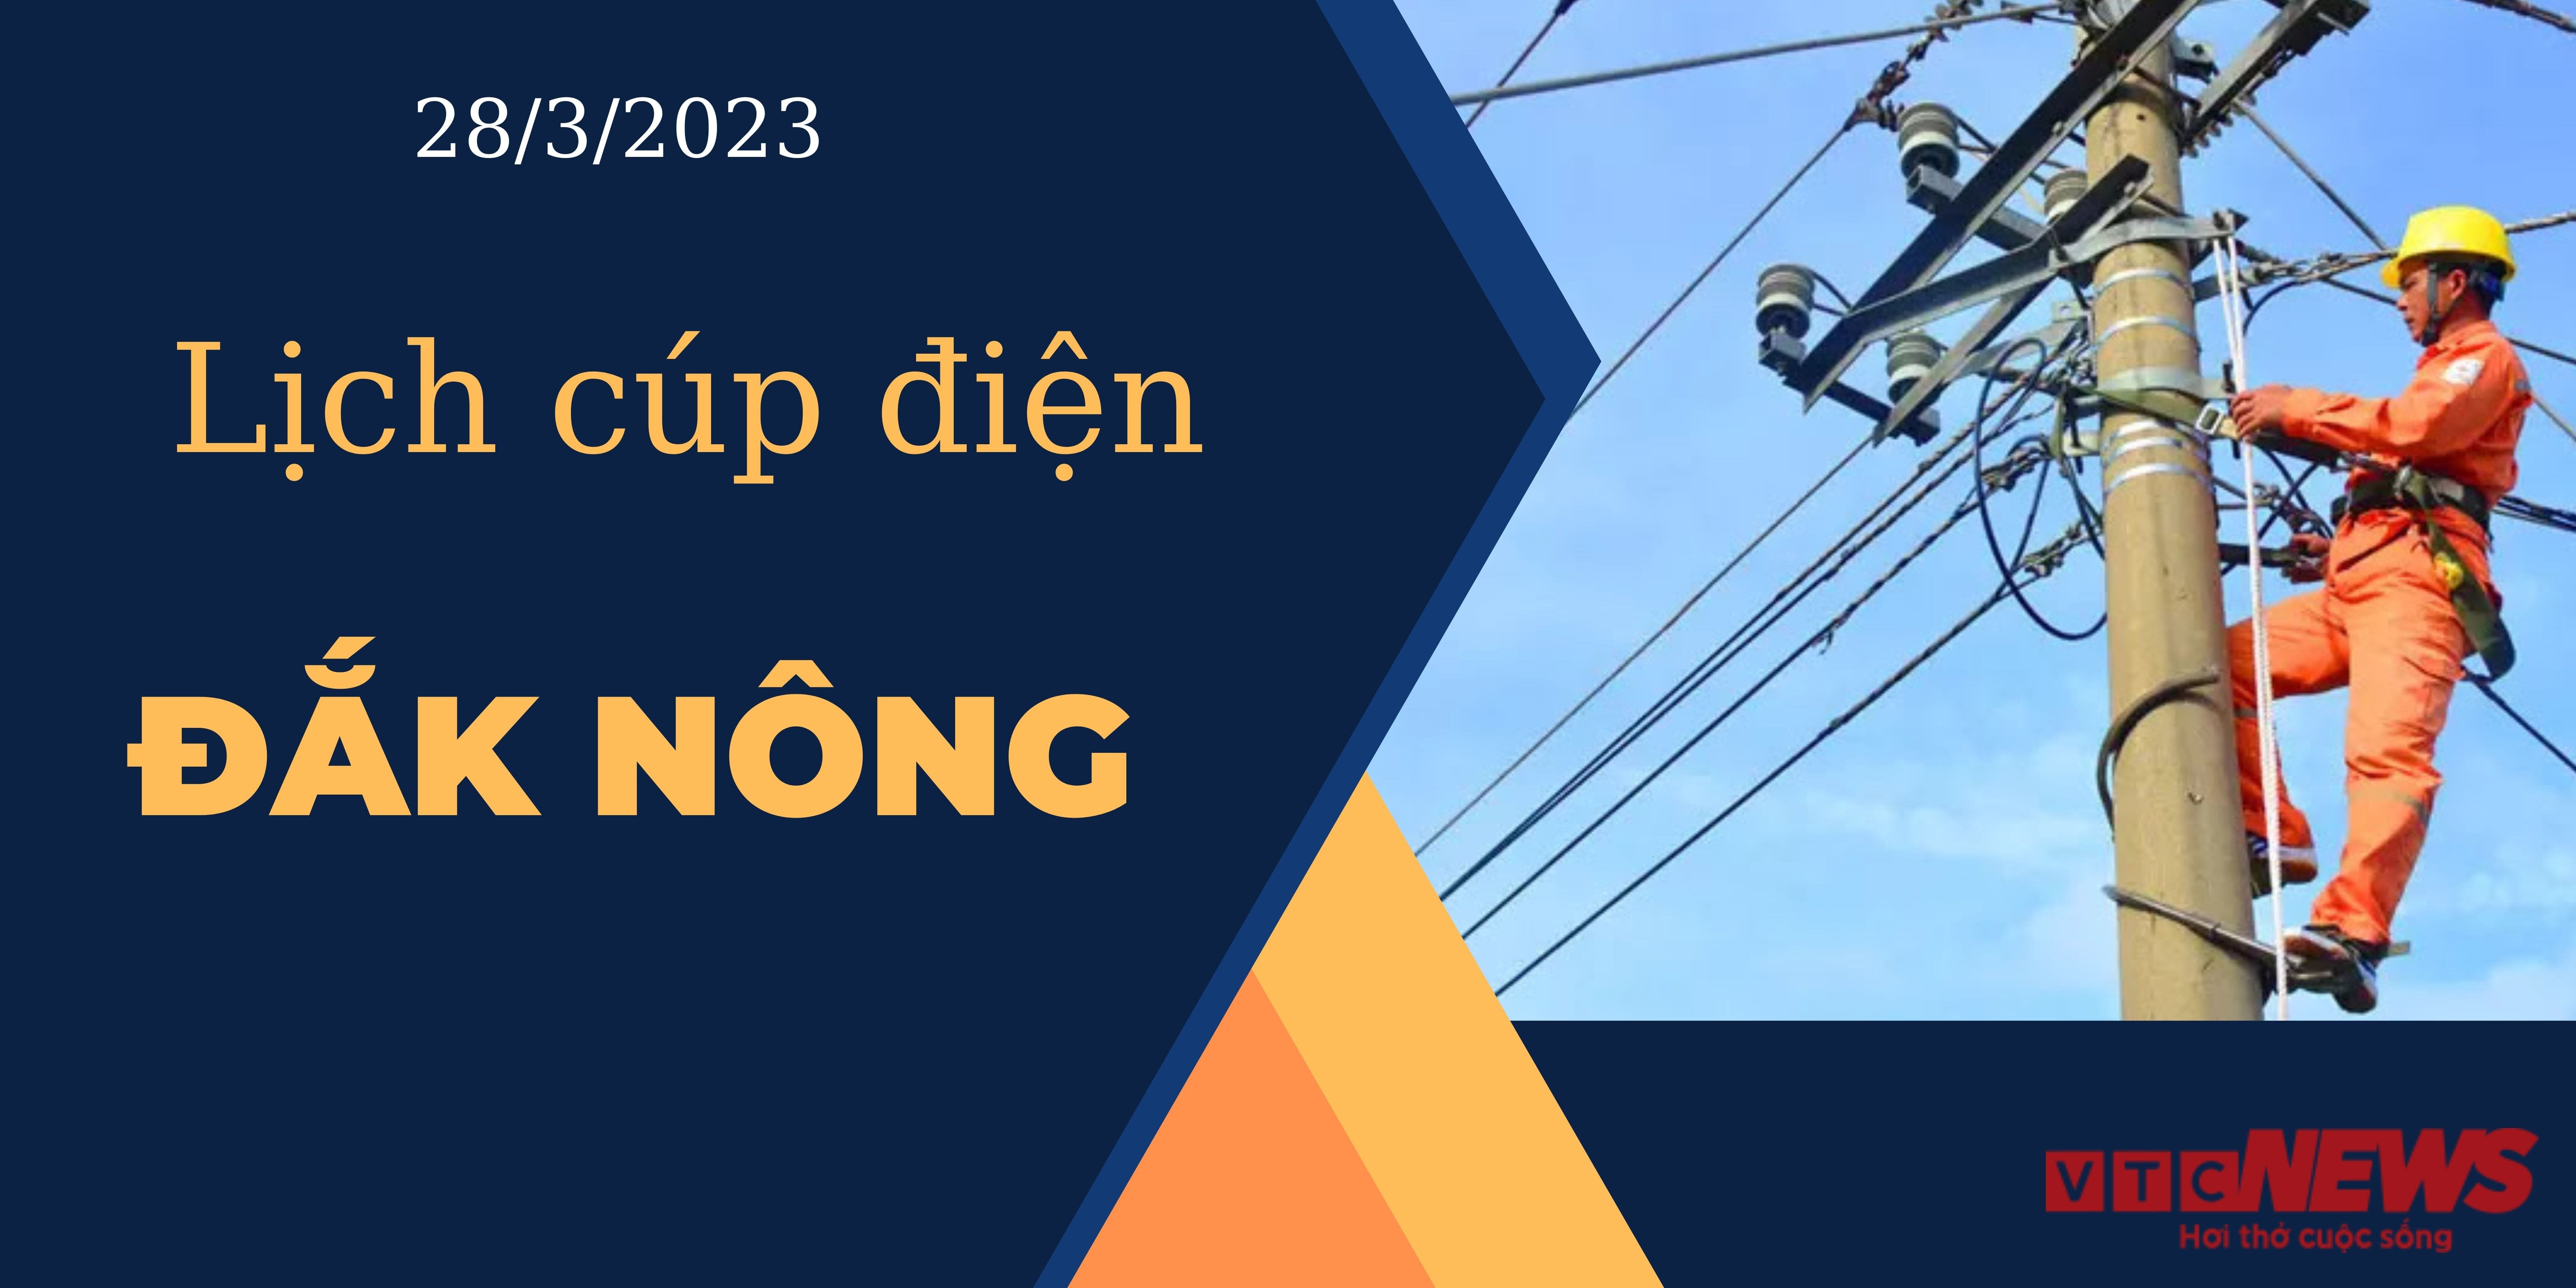 Lịch cúp điện hôm nay tại Đắk Nông ngày 28/03/2023 - 1